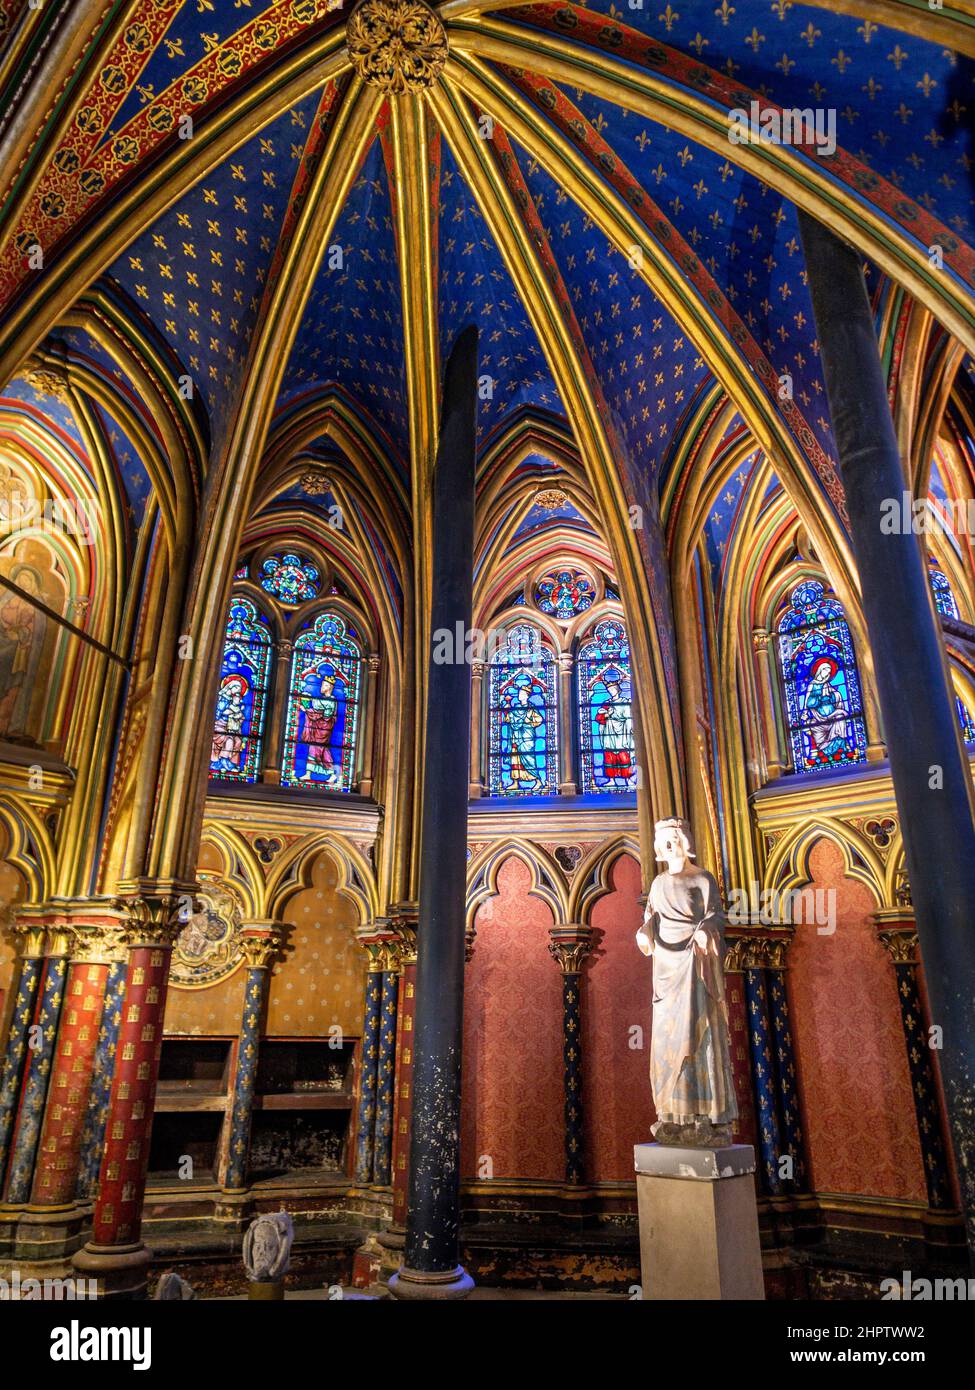 Estatua de San Luis en Sainte Chapelle: Extravagantes arcos dorados en un marco de techo azul profundo una estatua de la Estatua de San Luis IX en el frente de la planta baja de la famosa capilla. Foto de stock